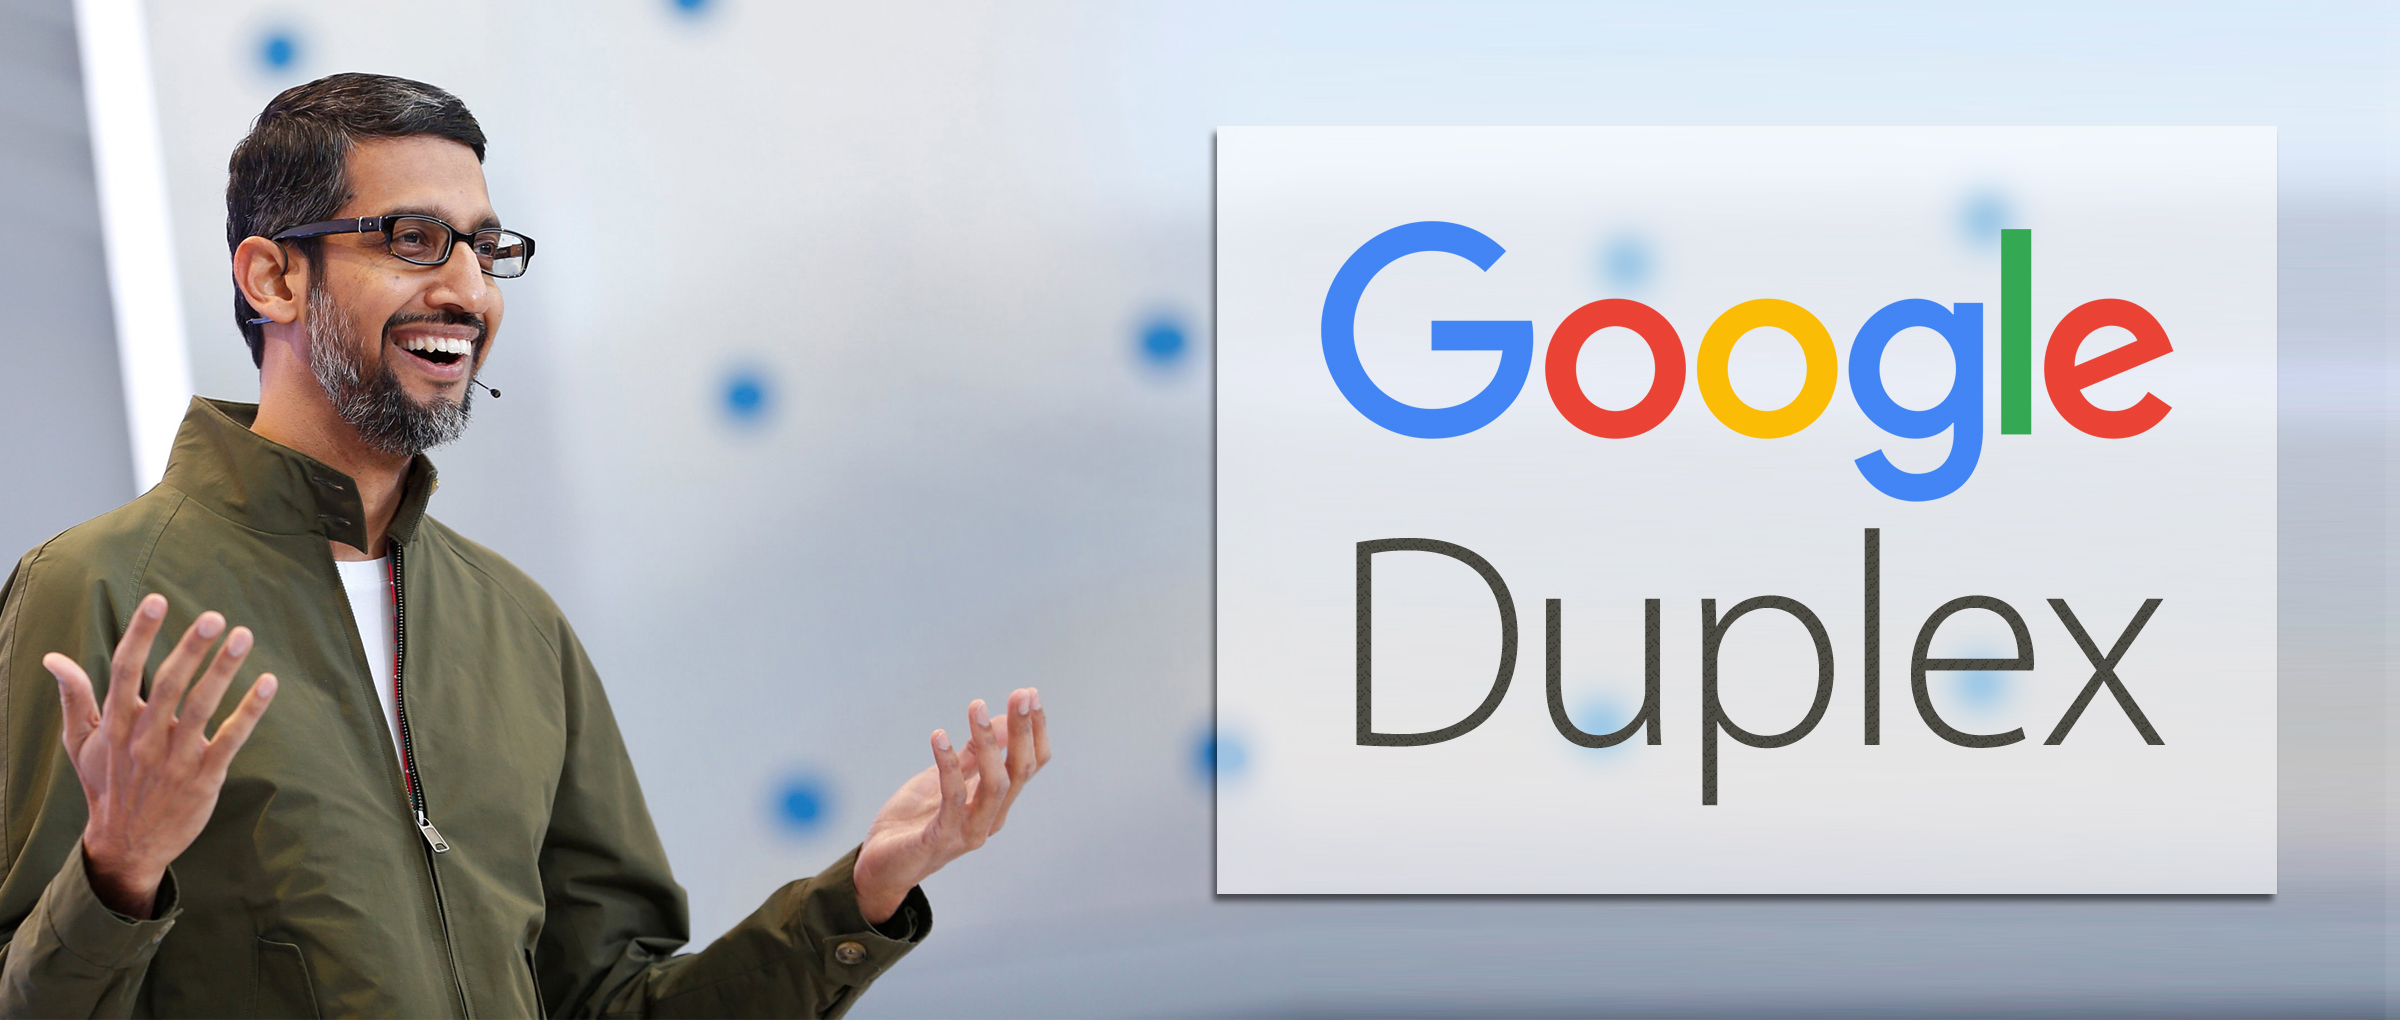 GoogleDuplex